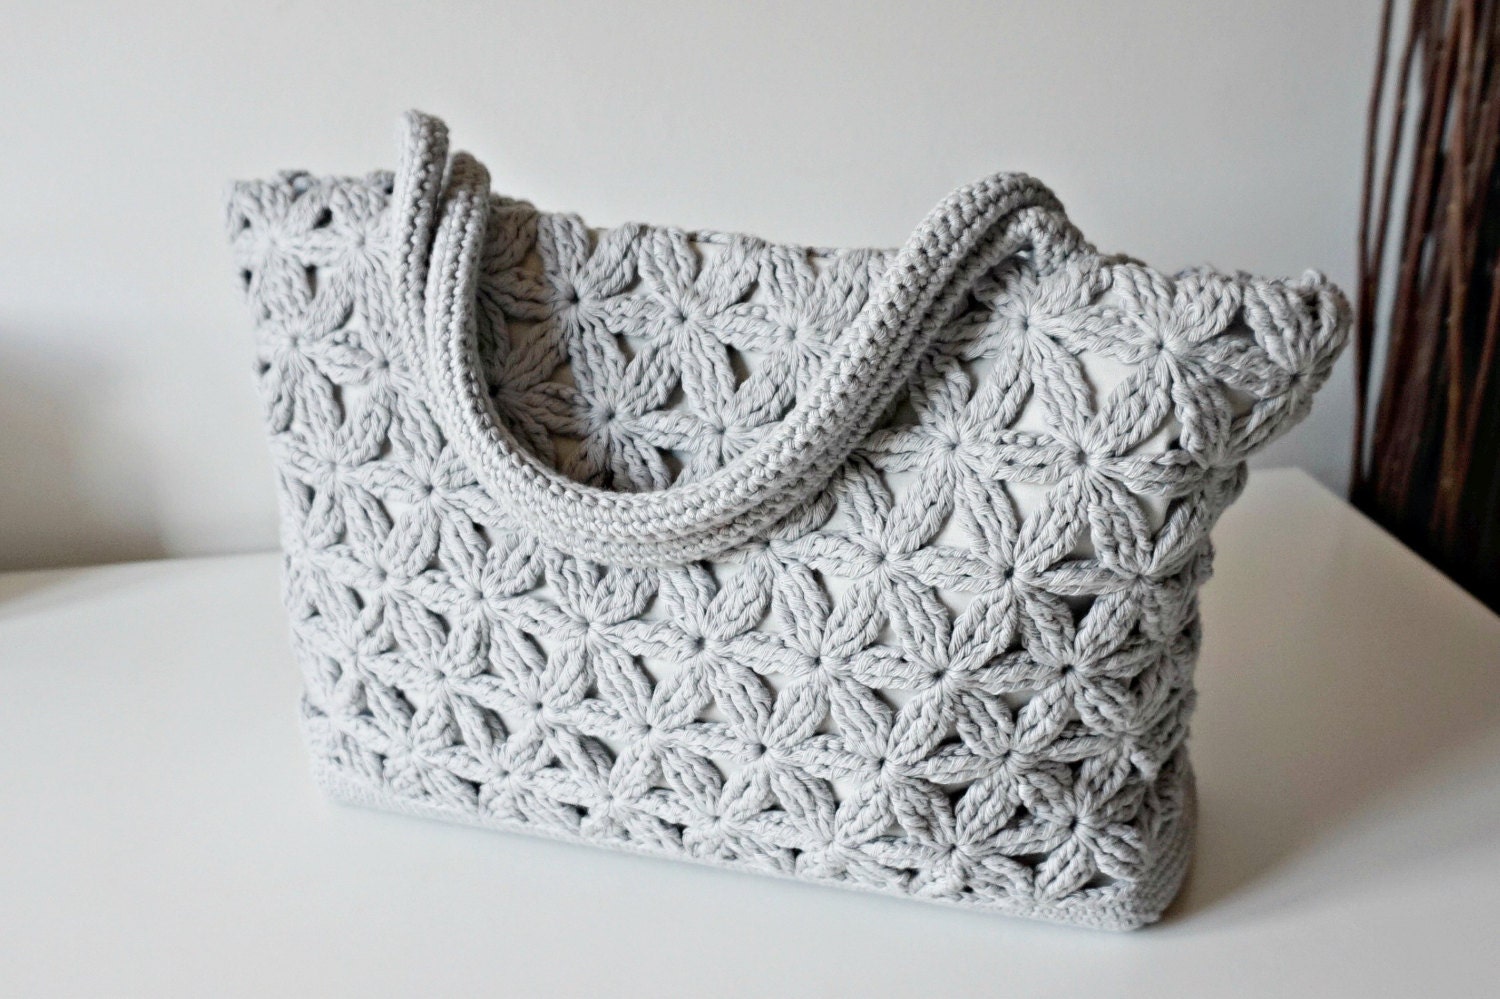 CROCHET PATTERN Crochet Bag Pattern Tote Pattern crochet purse